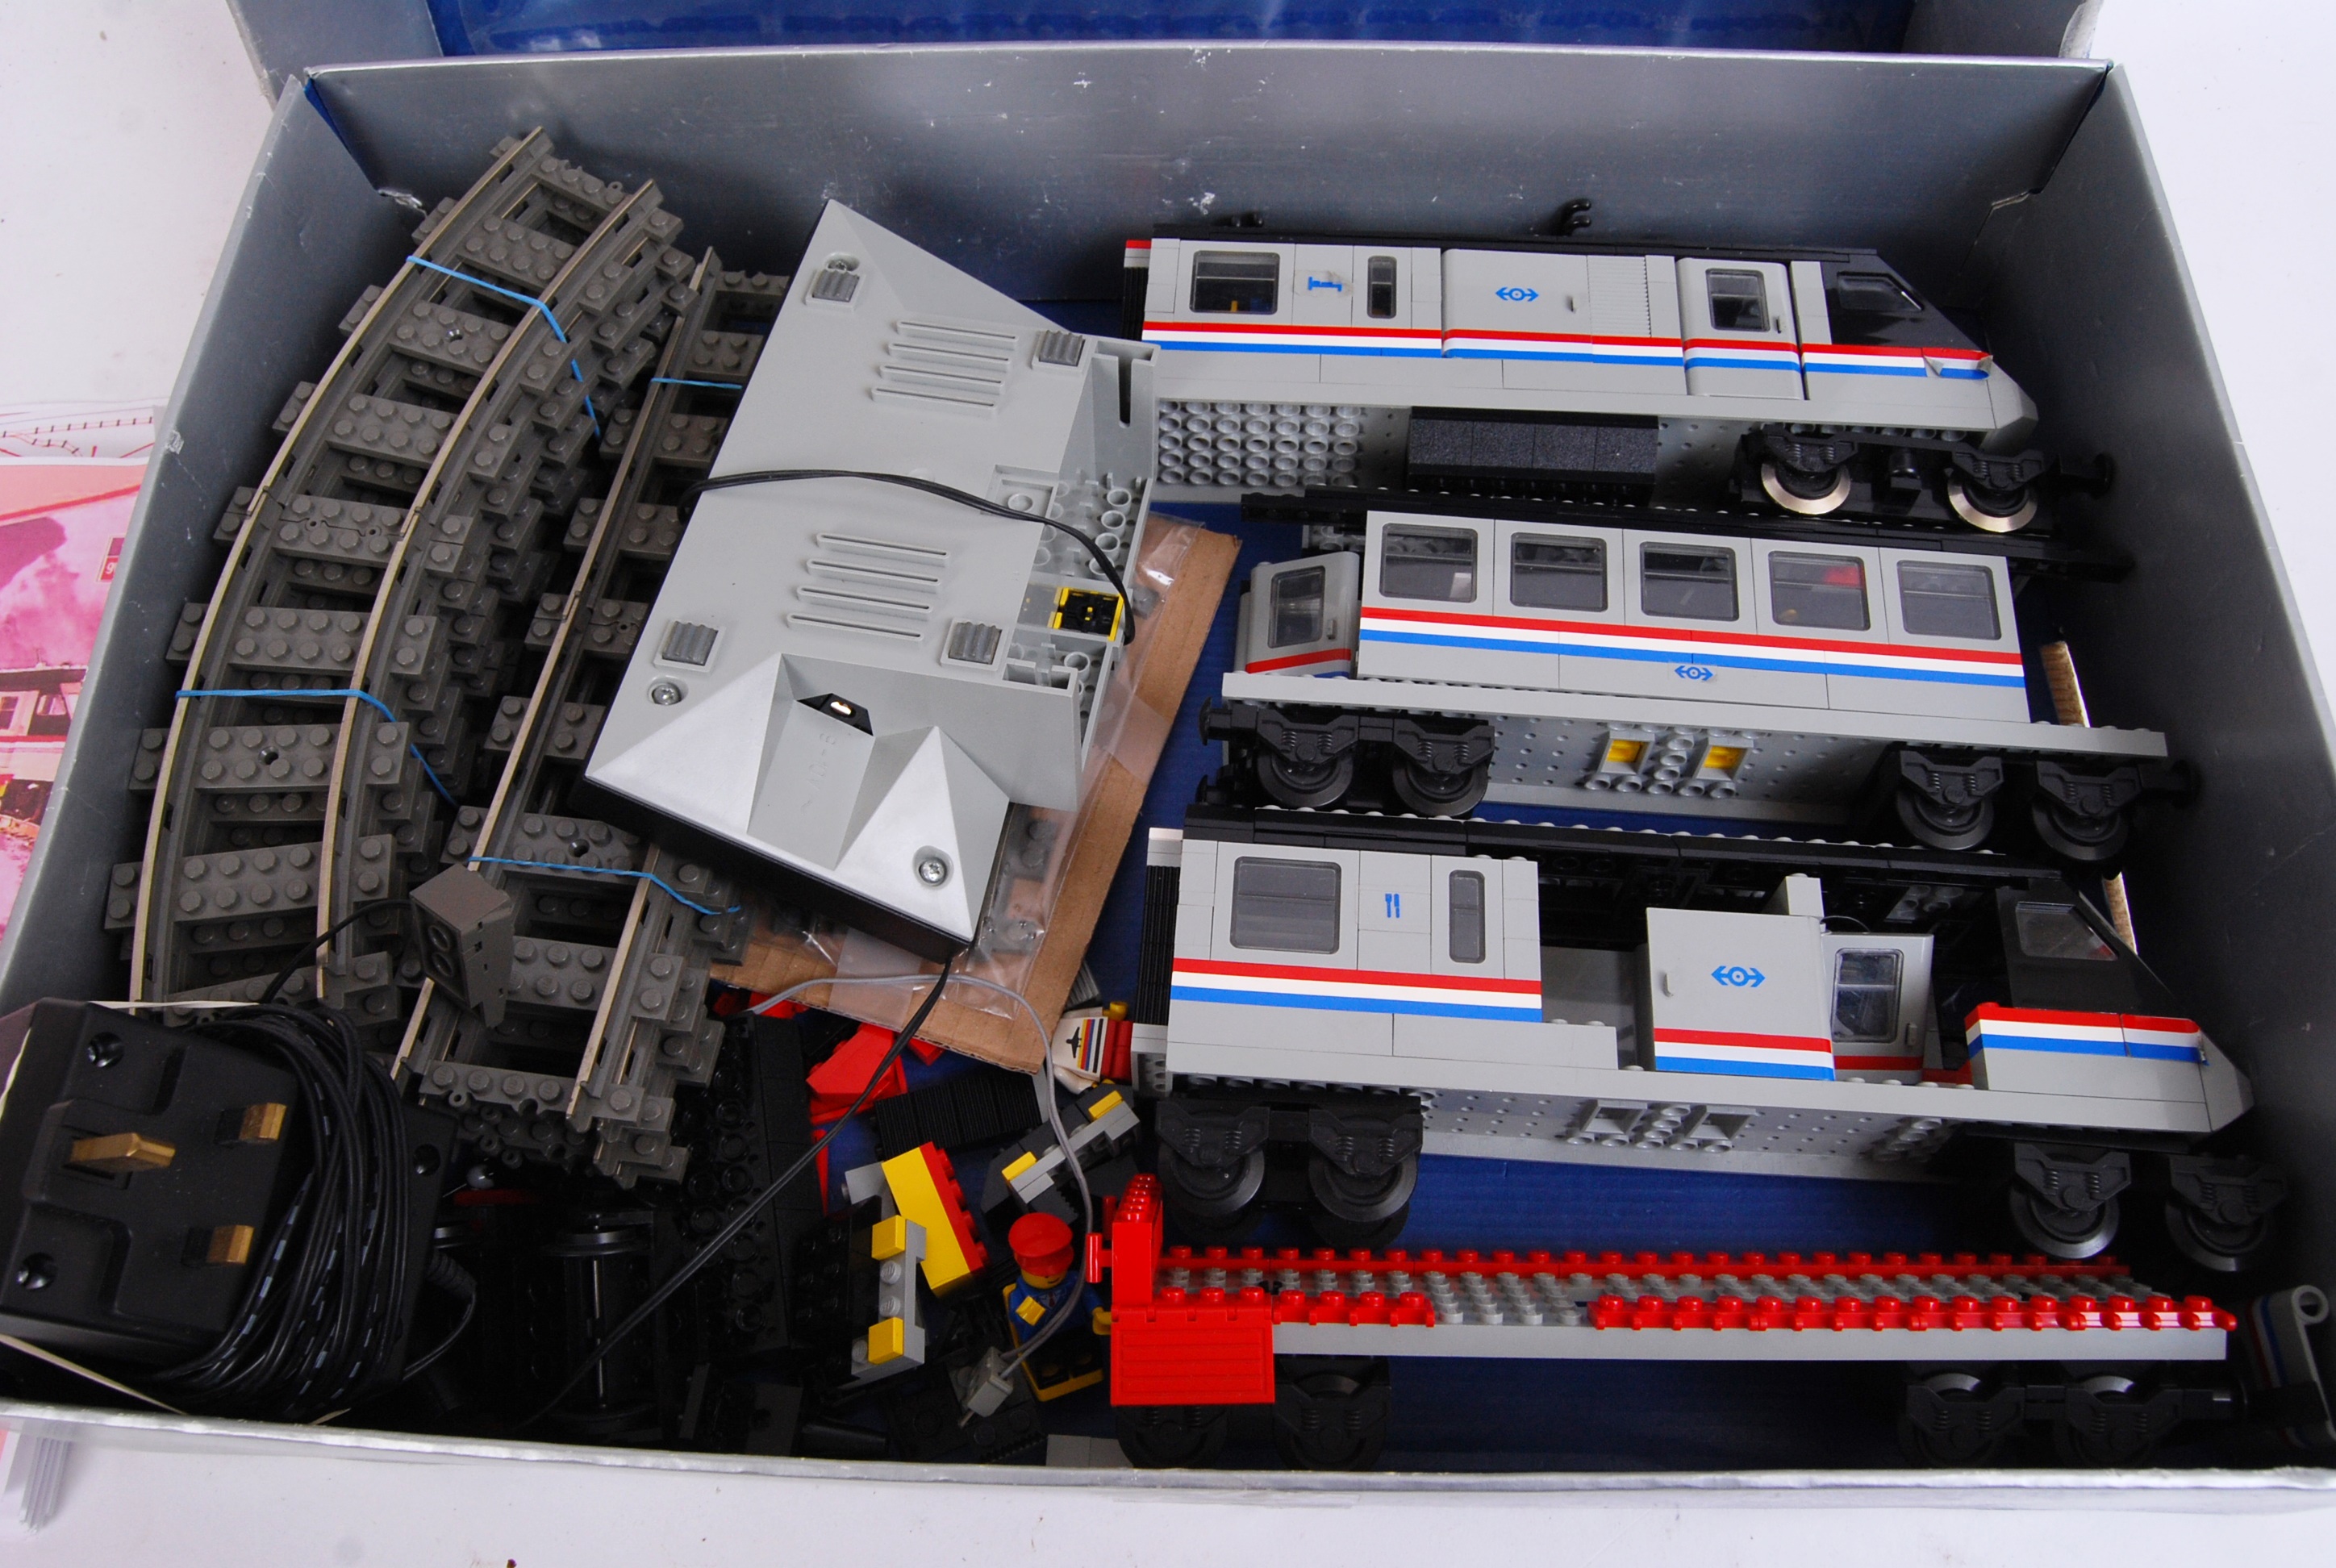 LEGO METROLINER; An original vintage Lego Metroliner 9v electric train set. - Image 2 of 5